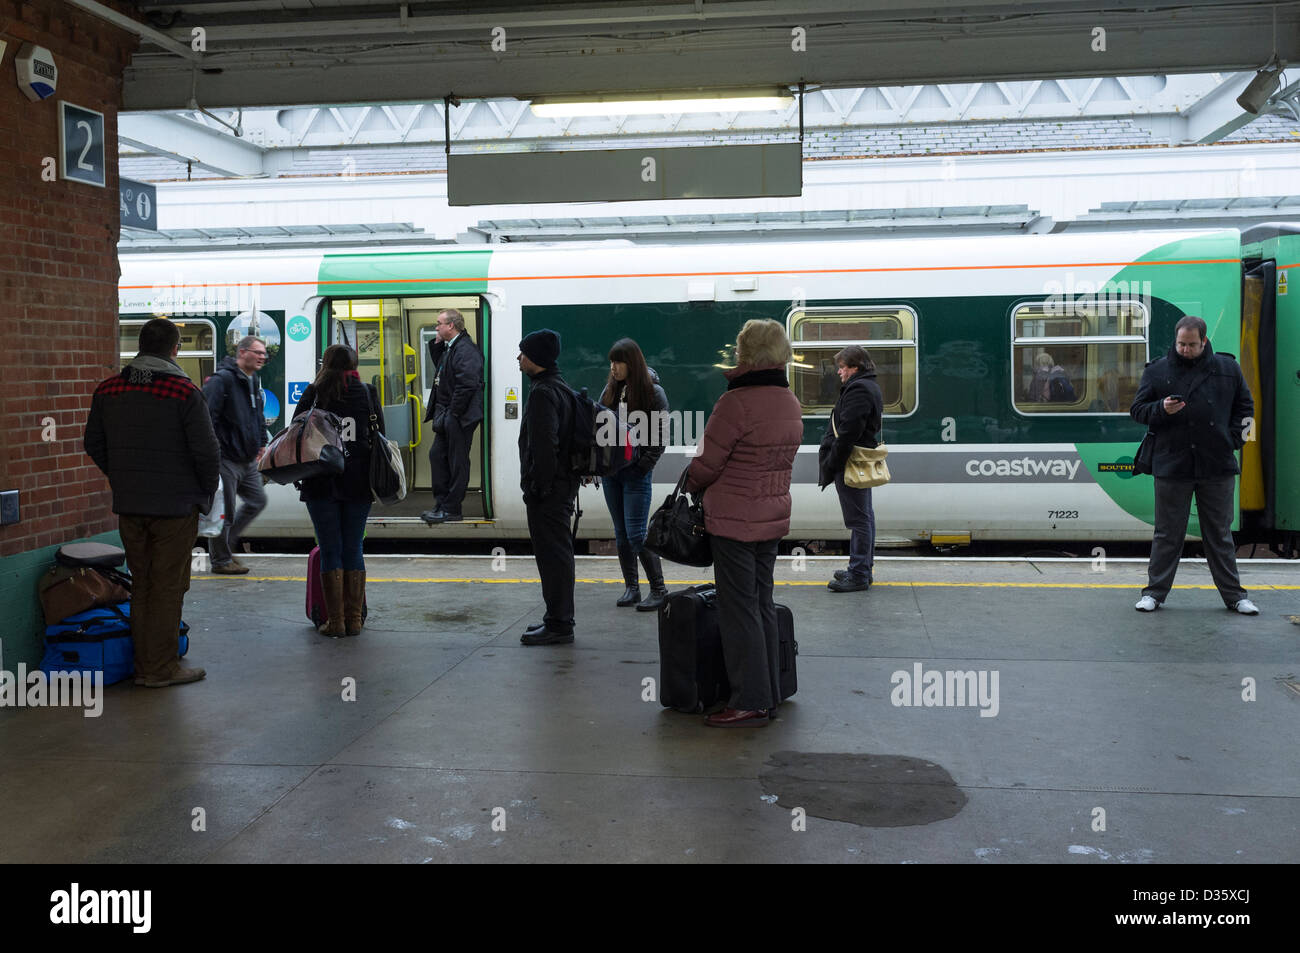 Eine Bahn Wache auf dem Handy eine Verzögerung, die Zugverbindung zu diskutieren, während Passagiere auf der platform.14/01/2013 in Worthing Station warten. Bild von Julie Edwards Stockfoto